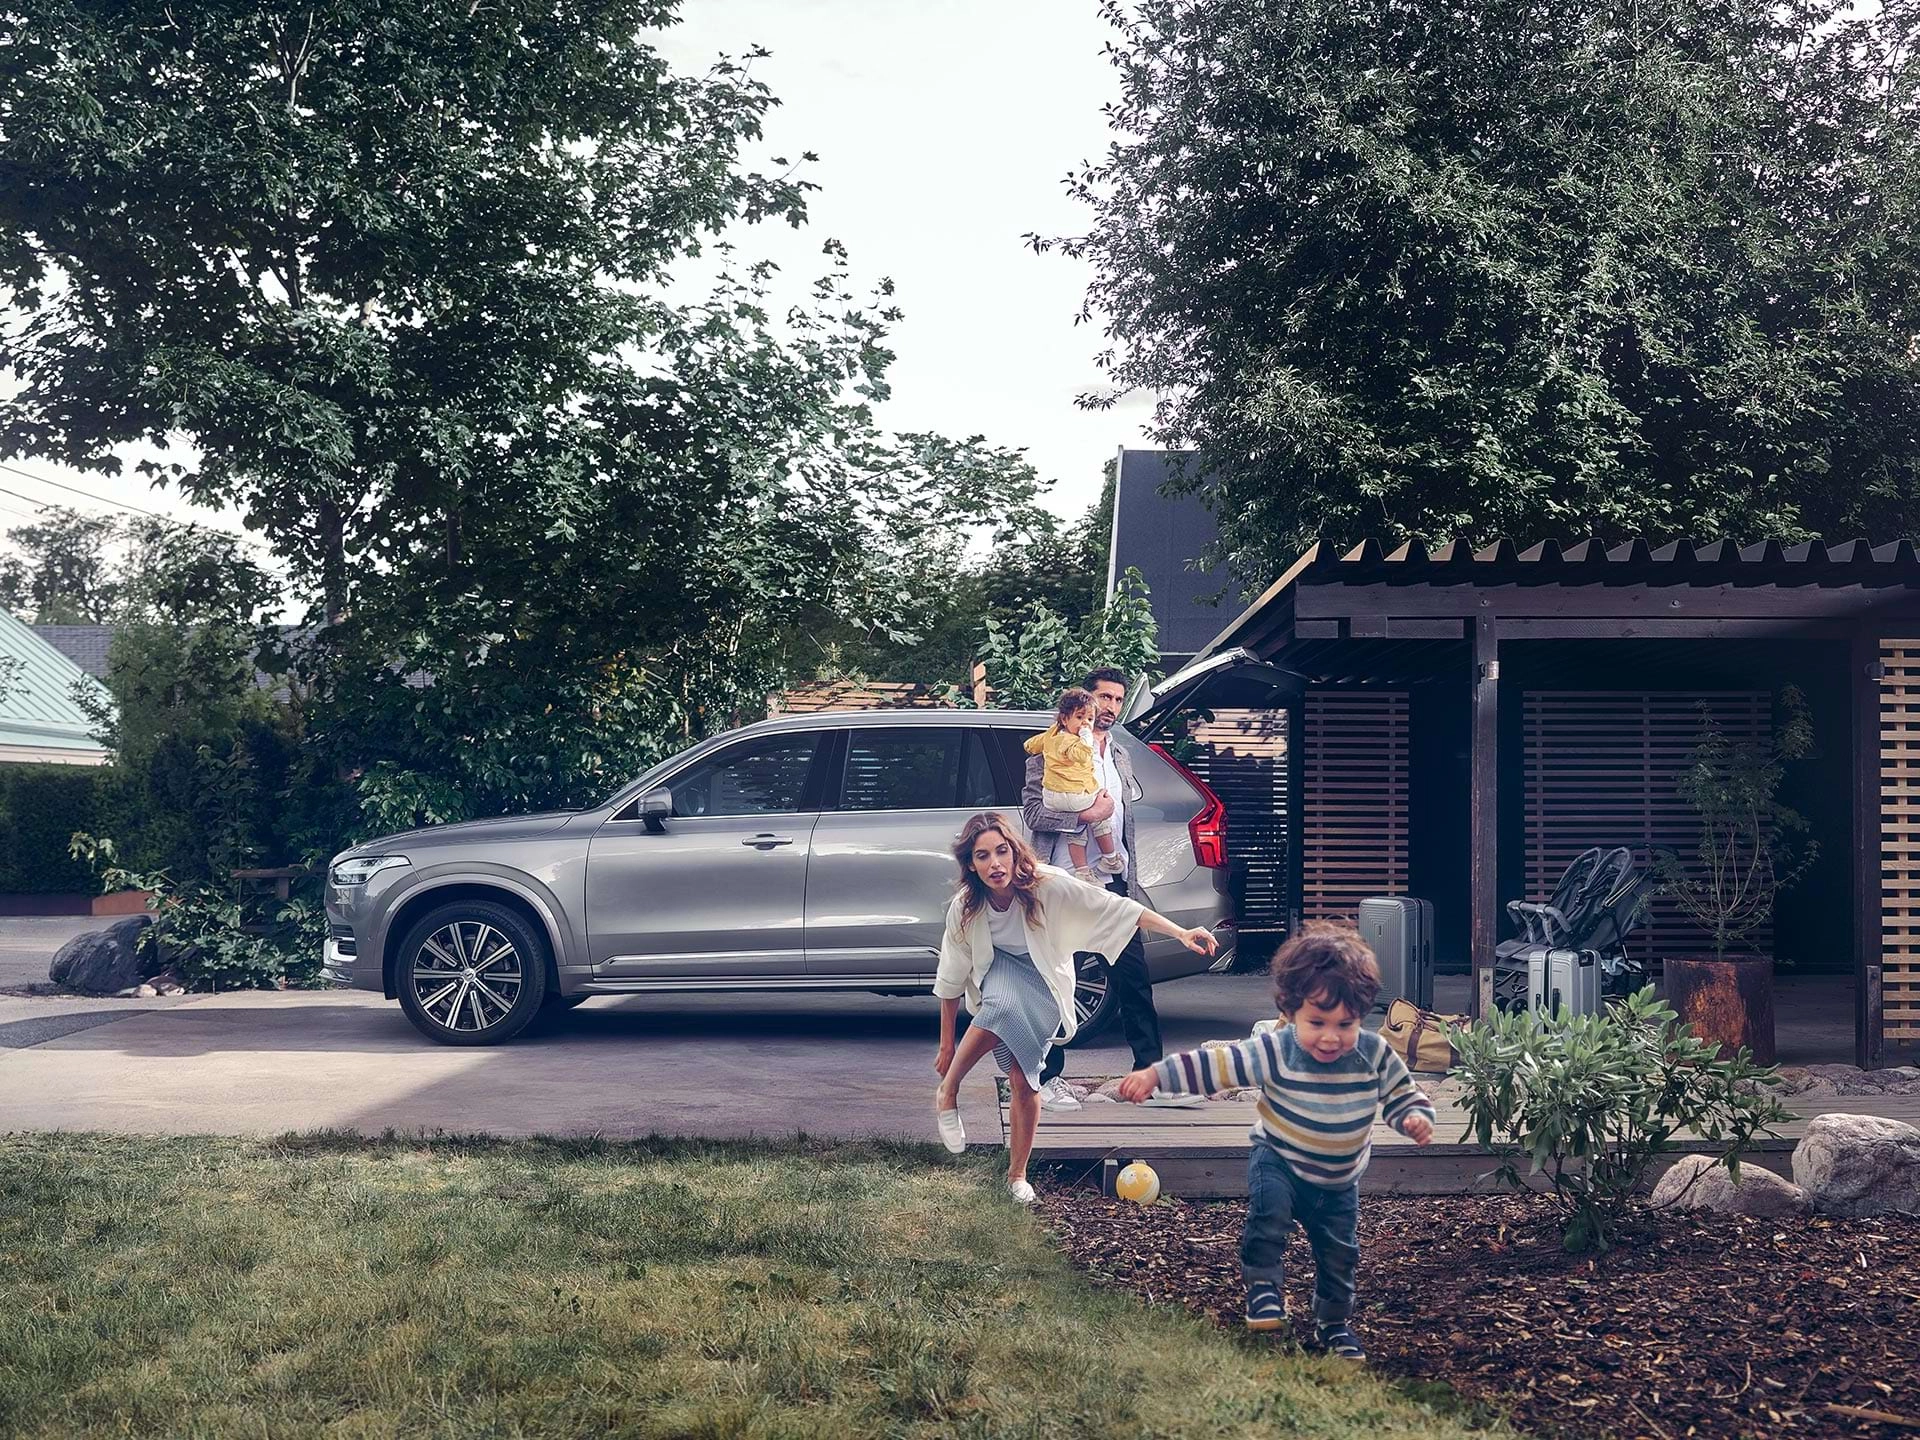 Ndërkohë që një familje përgatitet për një udhëtim me makinën e tyre Volvo SUV, një fëmijë vrapon nëpër oborr dhe mamaja e tij po e ndjek.